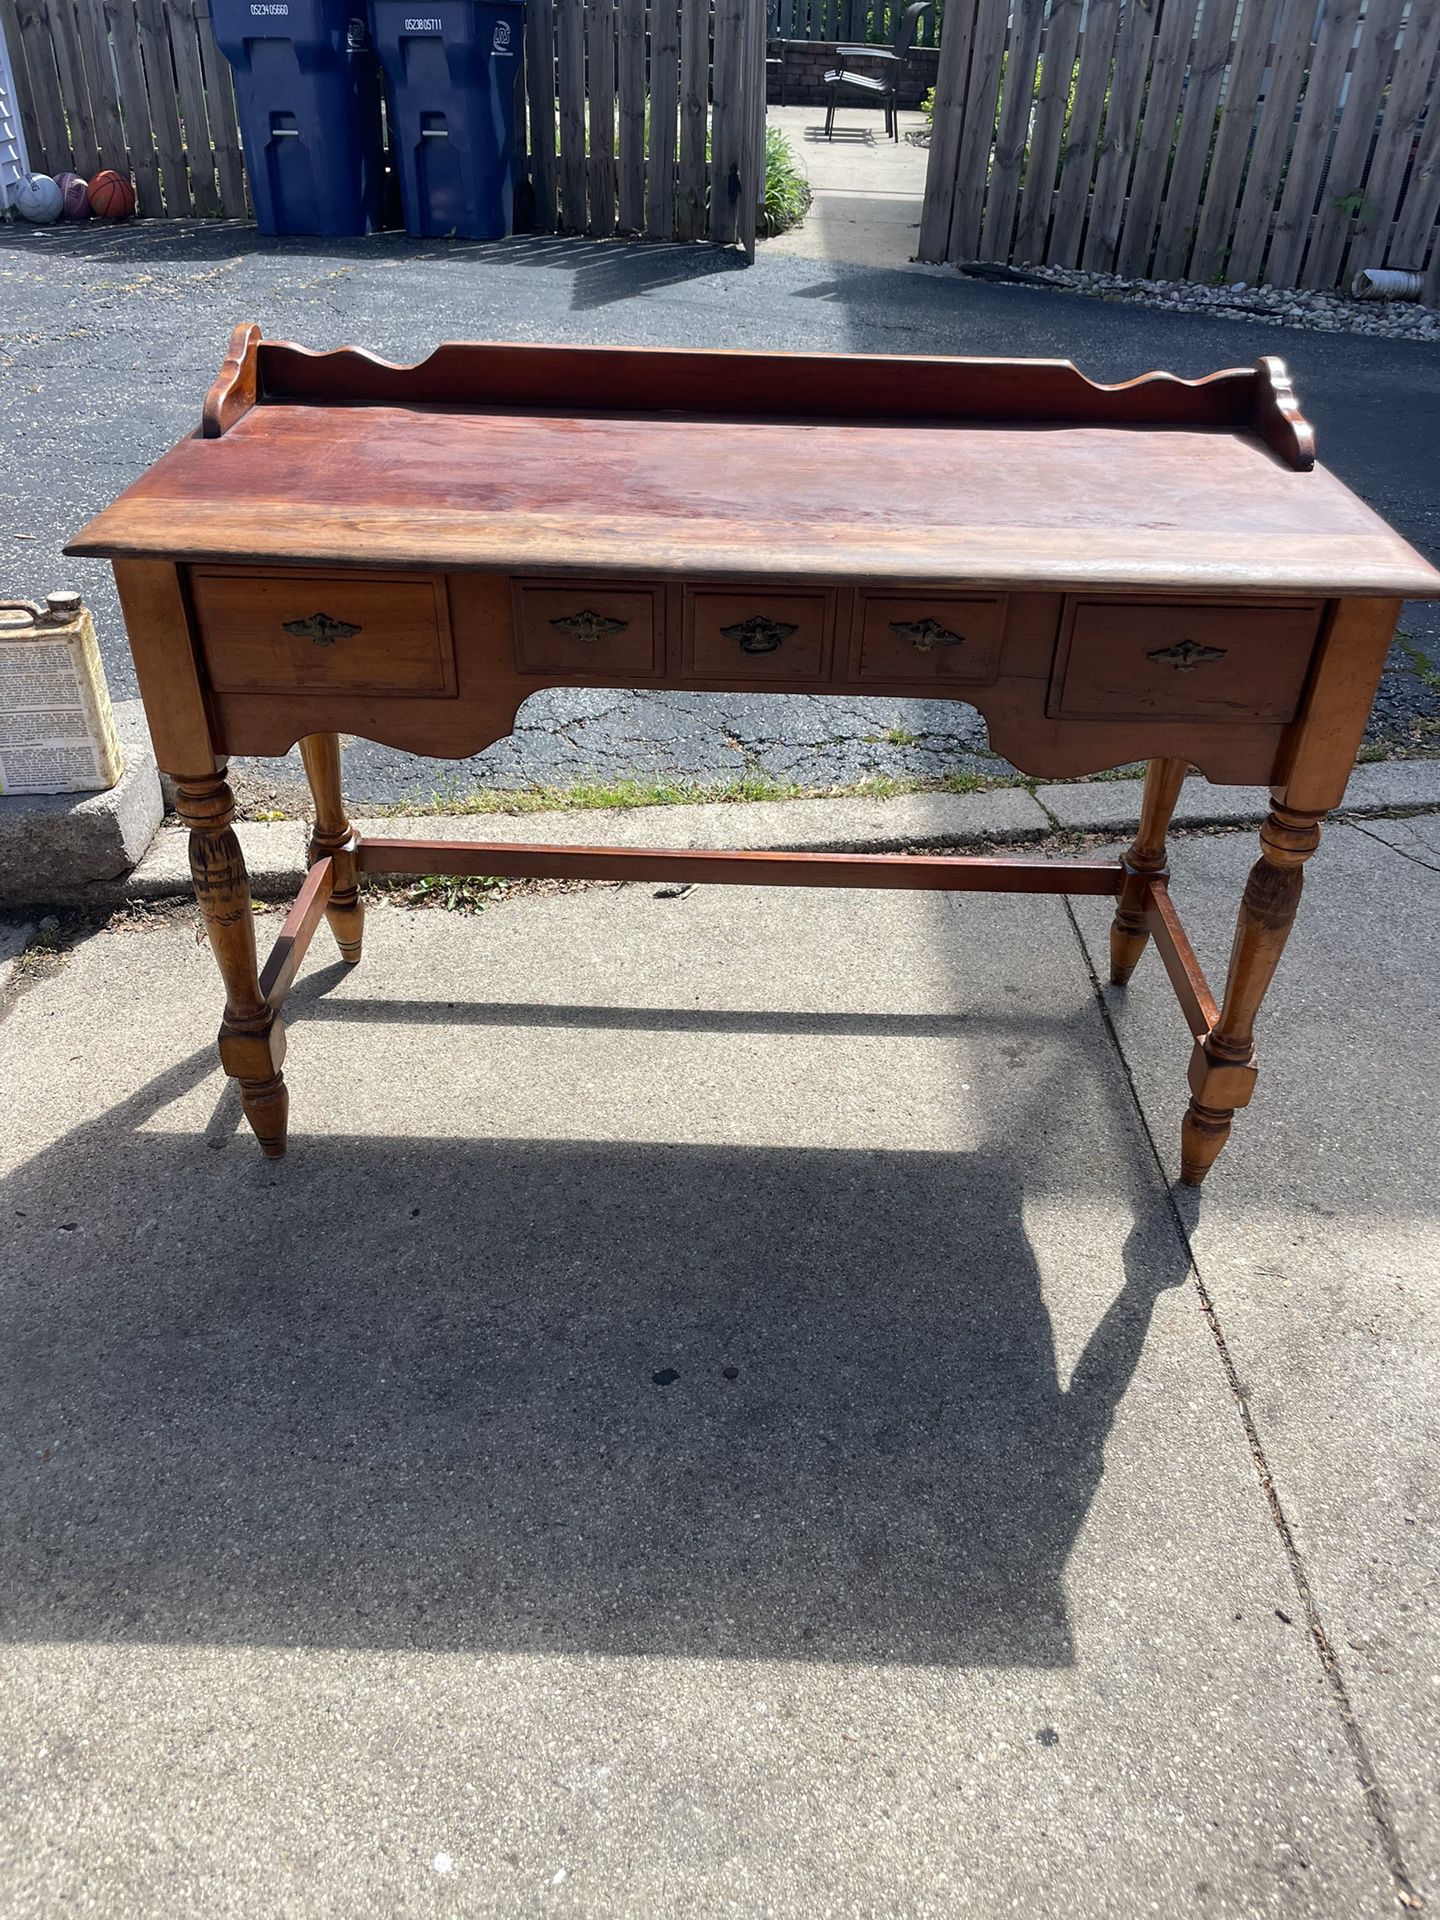 Vintage Ornate Wooden Side/Banker Desk, with 3 Drawers, Solid Wood, 48w,21 deep, 30 hi, $85